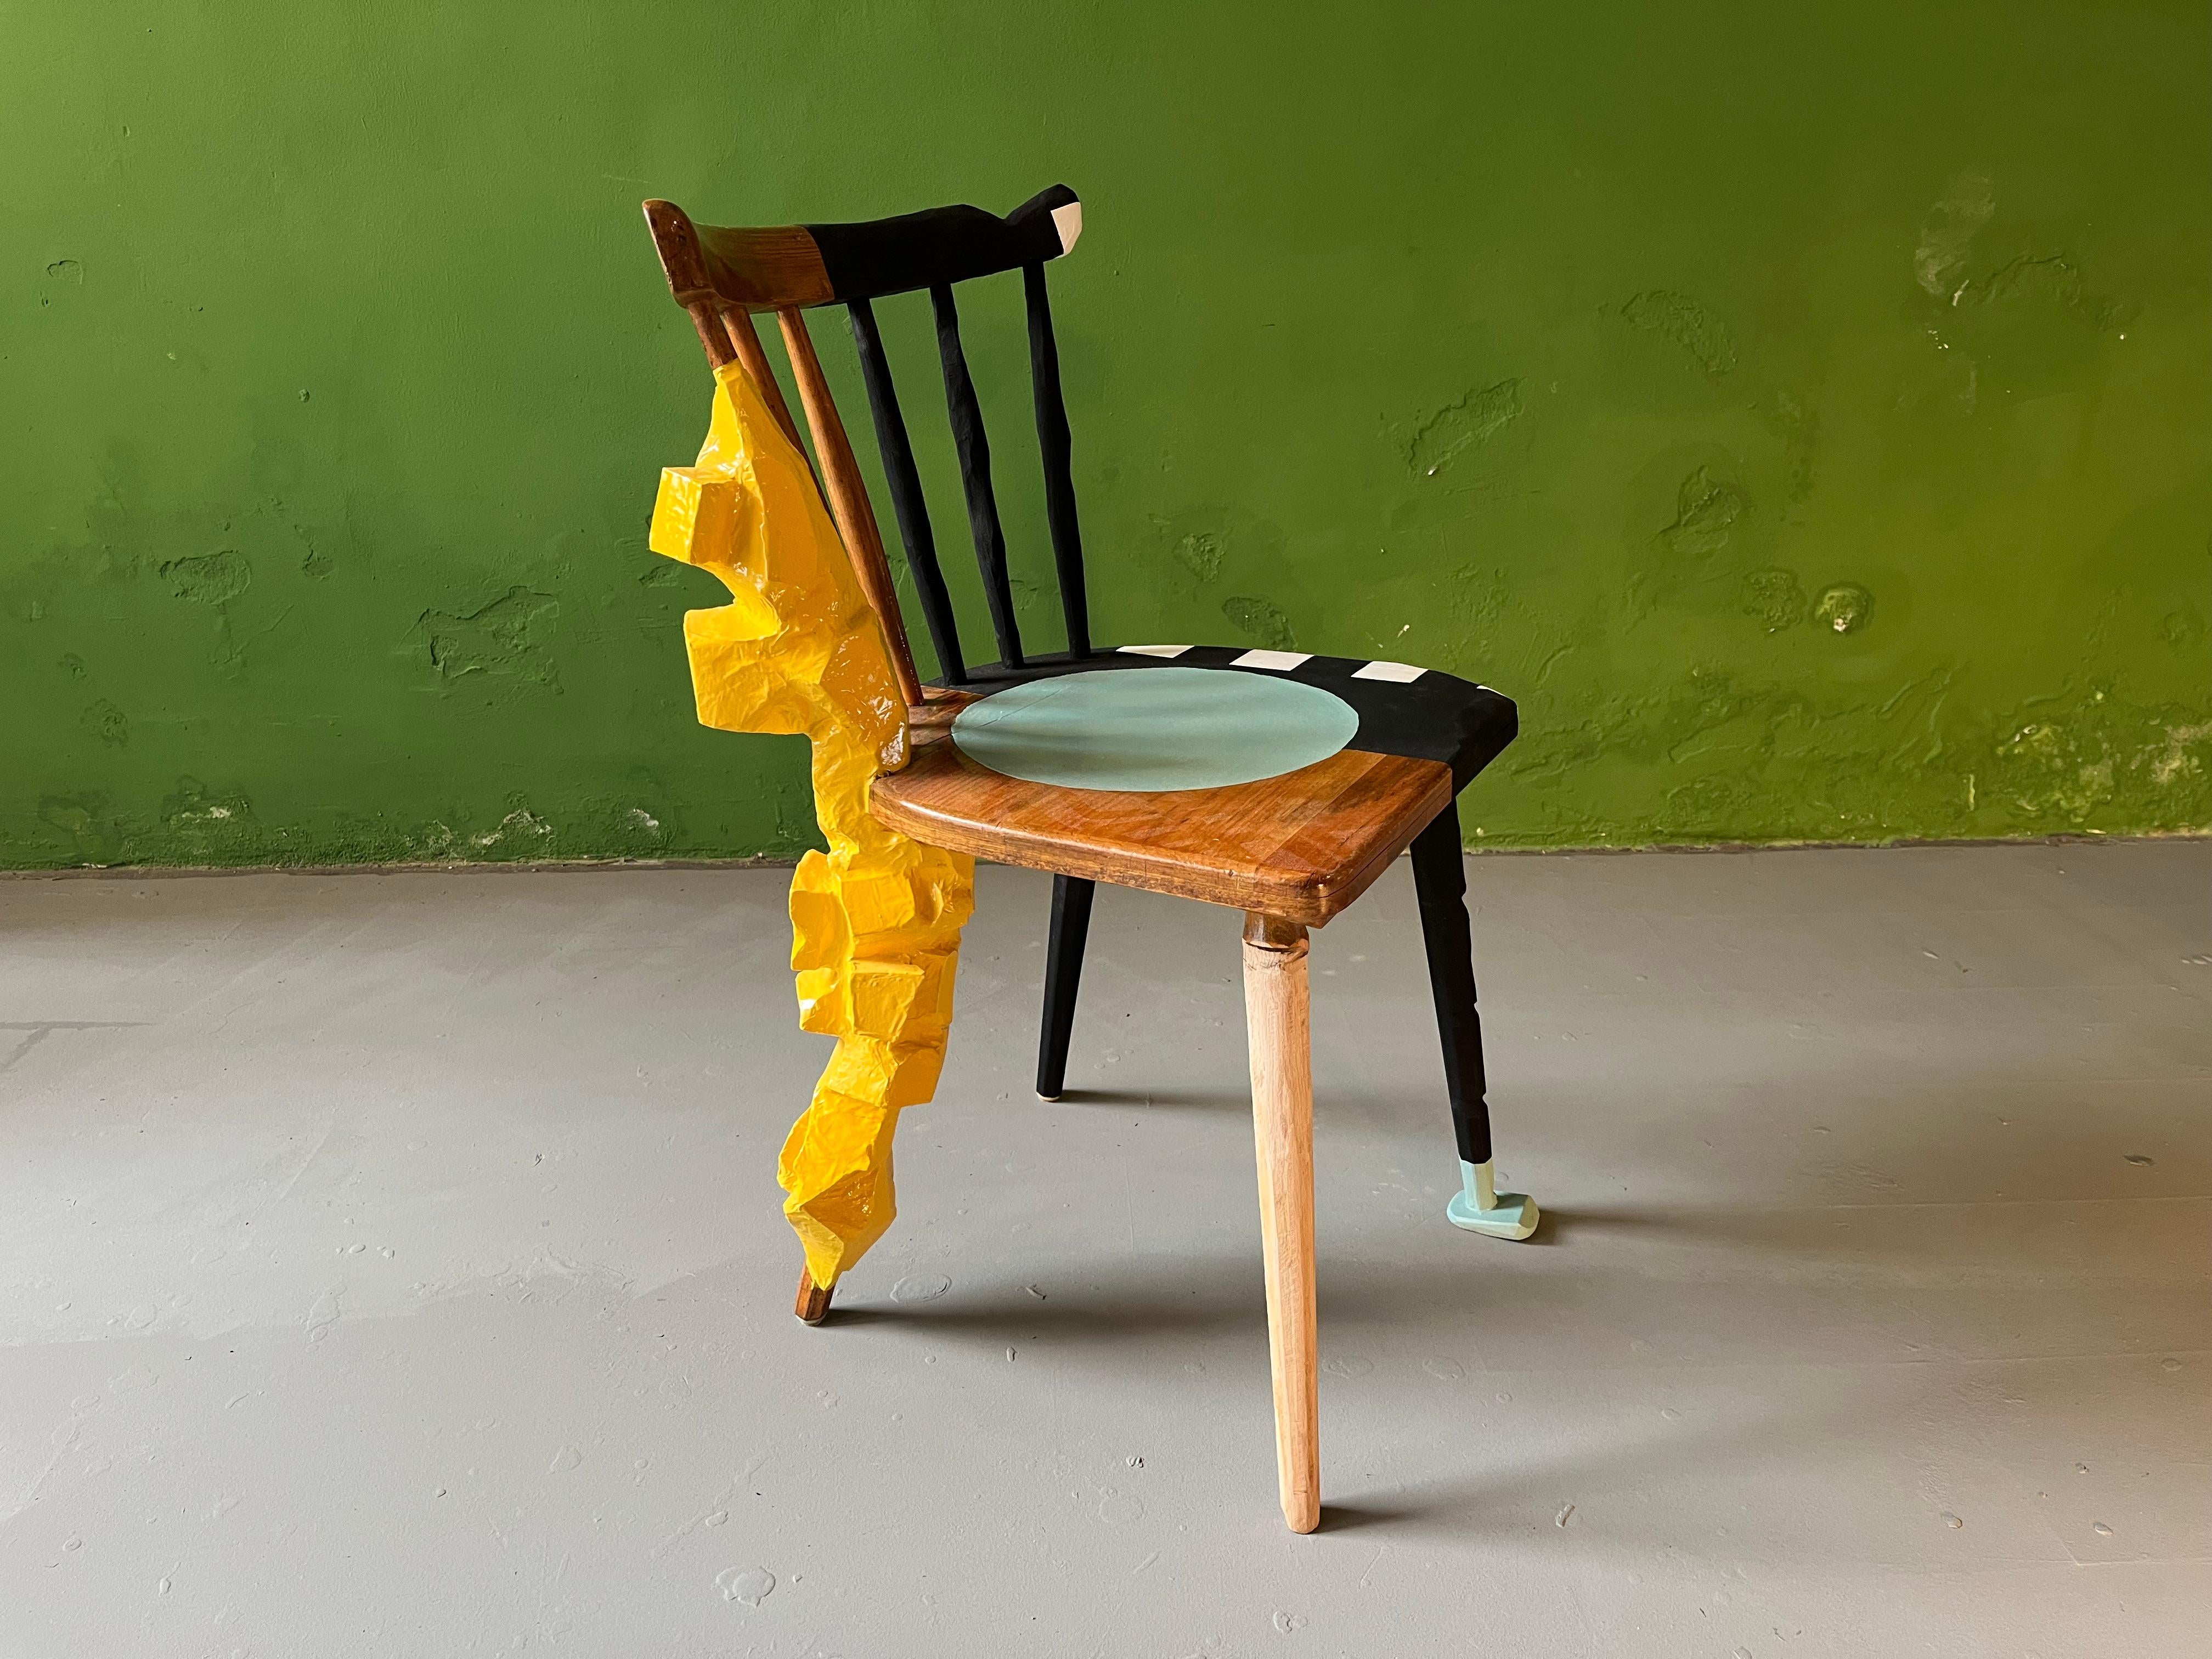 Chaise design sculpturale. Chaise de cuisine traditionnelle bavaroise contemporaine, avec ajout d'un pied sculpté, remodelée, peinte et laquée par Markus Friedrich Staab.
Vous pouvez utiliser cette chaise au quotidien ou la considérer comme une